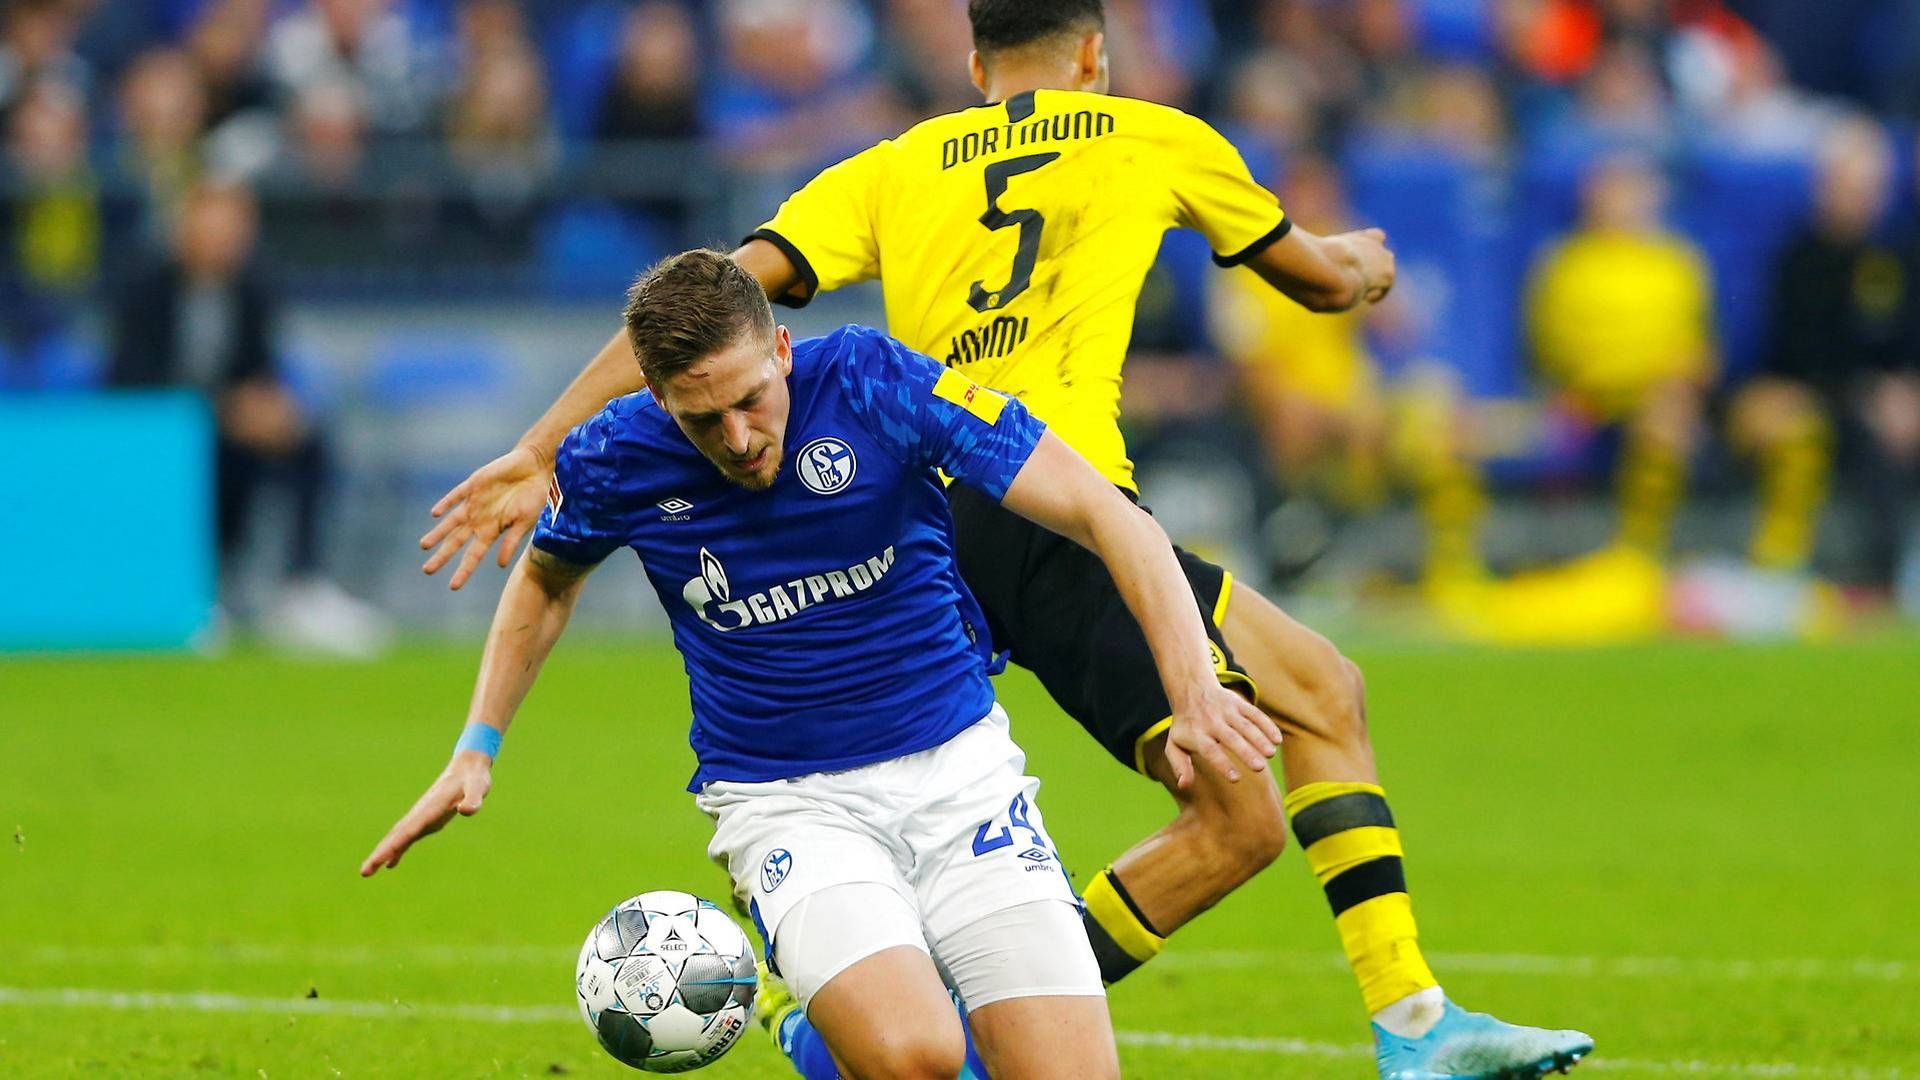 De to Bundesliga-klubber Dortmund og Schalke spiller første kamp, når den tyske liga genoptages i weekenden. Her et billede fra en kamp mellem de to klubber i oktober 2019. | Foto: Thilo Schmuelgen/Reuters/Ritzau Scanpix